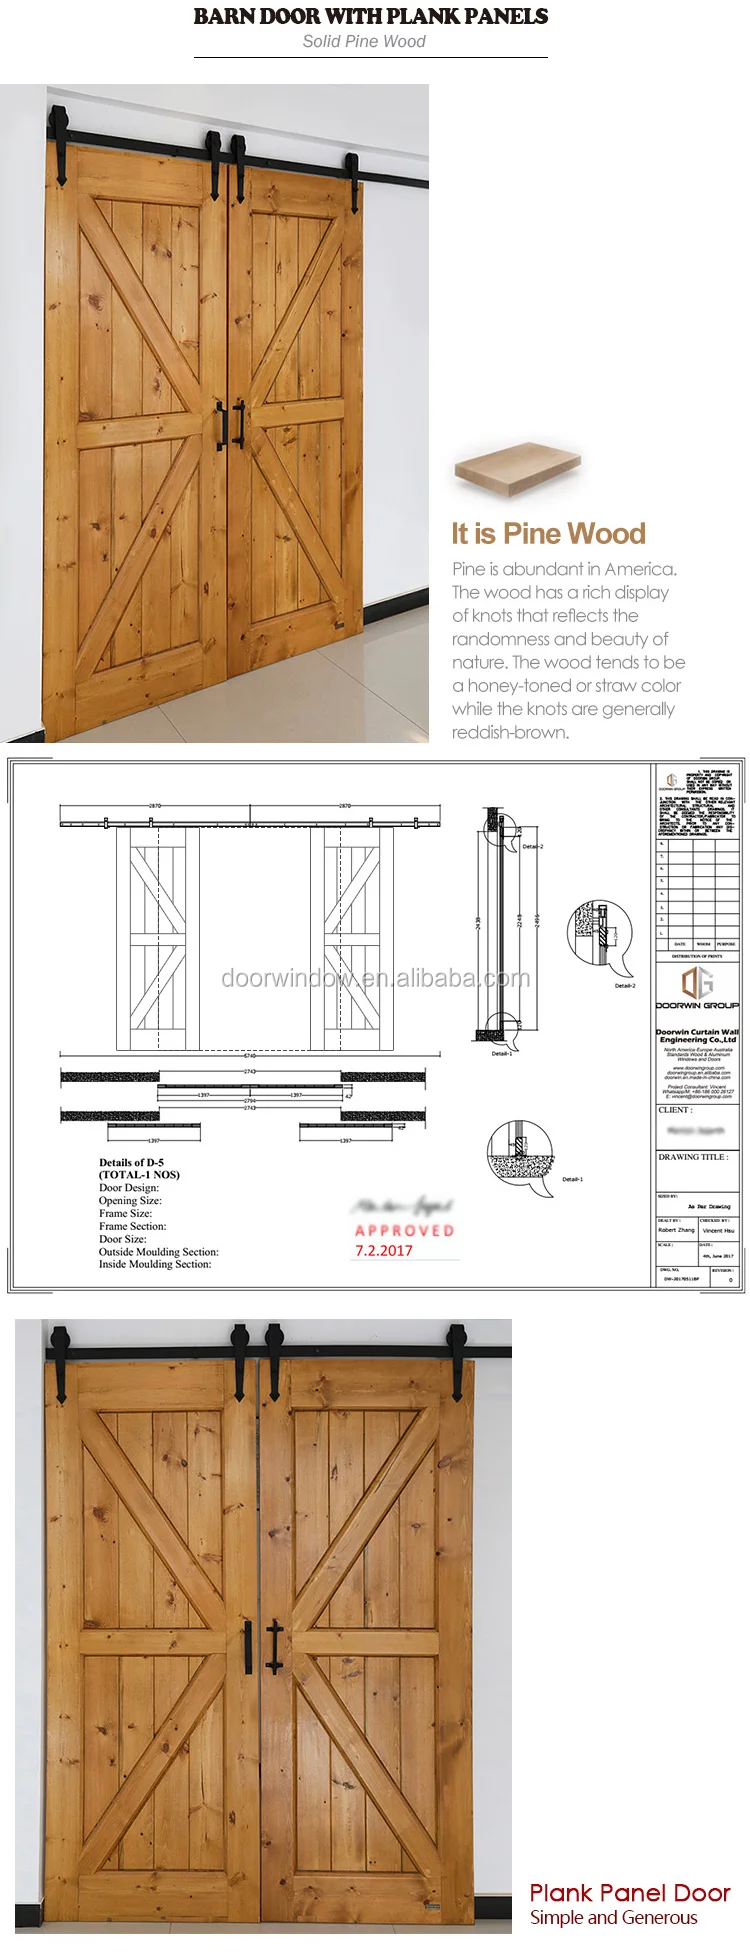 American style interior doors wood room door designs photo sliding barn door with track